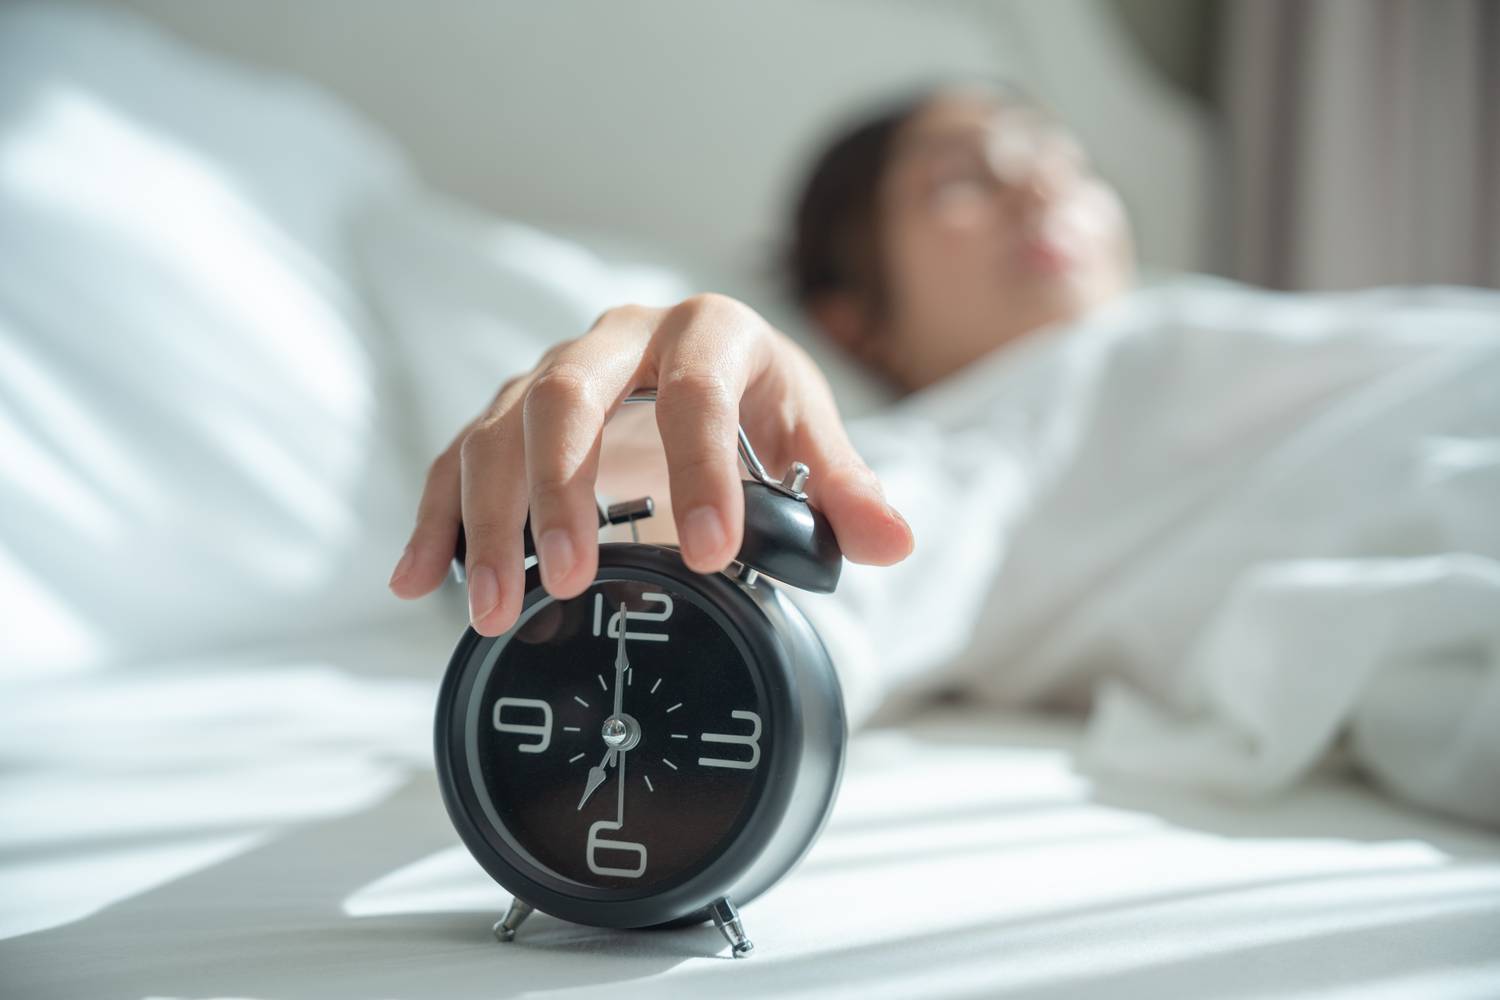 Az alvás rendkívül fontos az anyagcsere megfelelő működésének szempontjából. Pihenés alatt a szervezet helyreállítja magát, kiegyensúlyozza a hormonokat, és feldolgozza a nappal átélt eseményeket. Hatással van a kortizolra, az inzulinra és a pajzsmirigy működésére, ezért elengedhetetlen, hogy éjszakánként legalább 6-8 órát aludj.